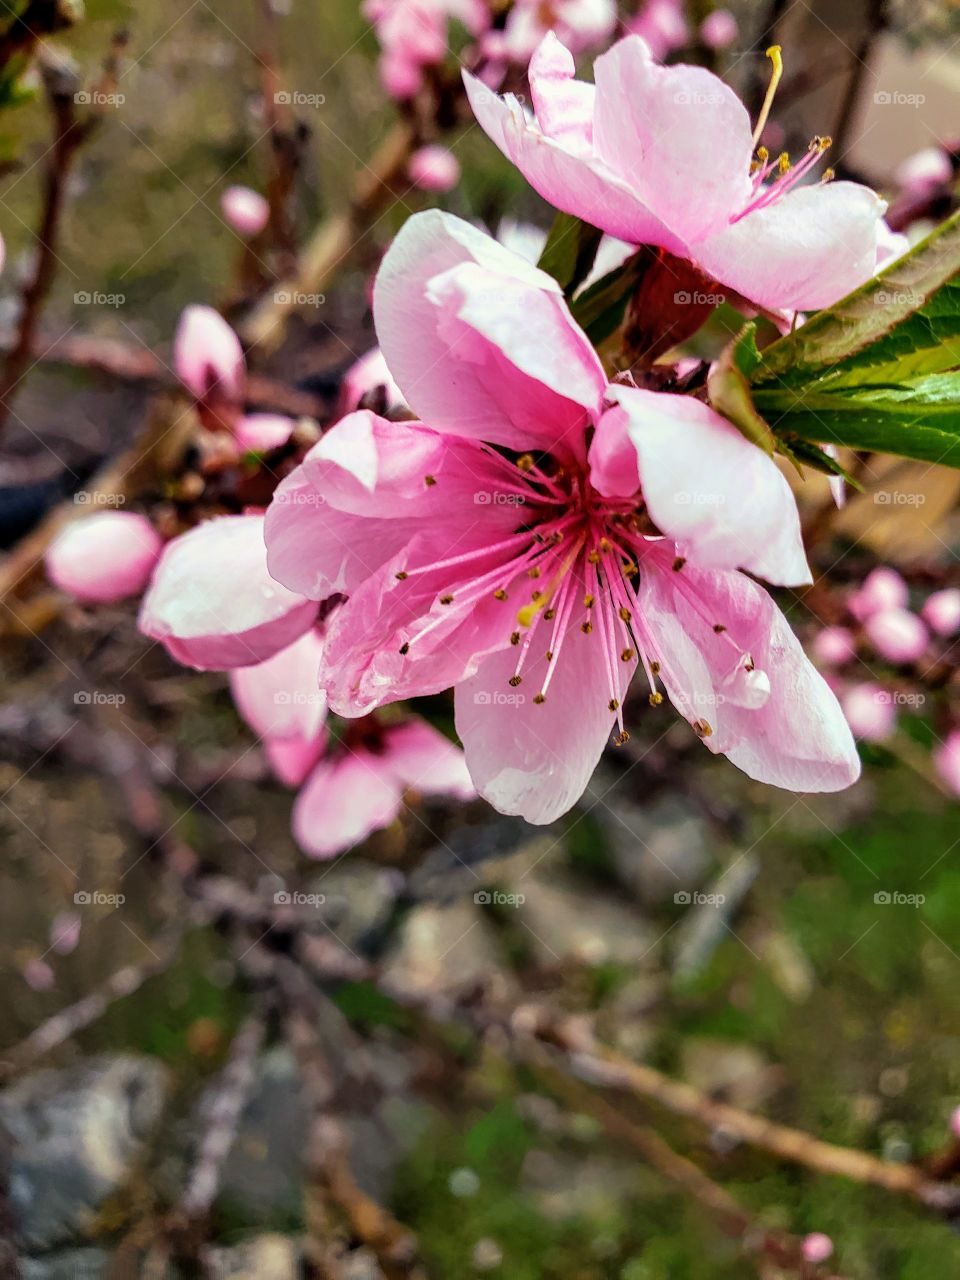 one blossom